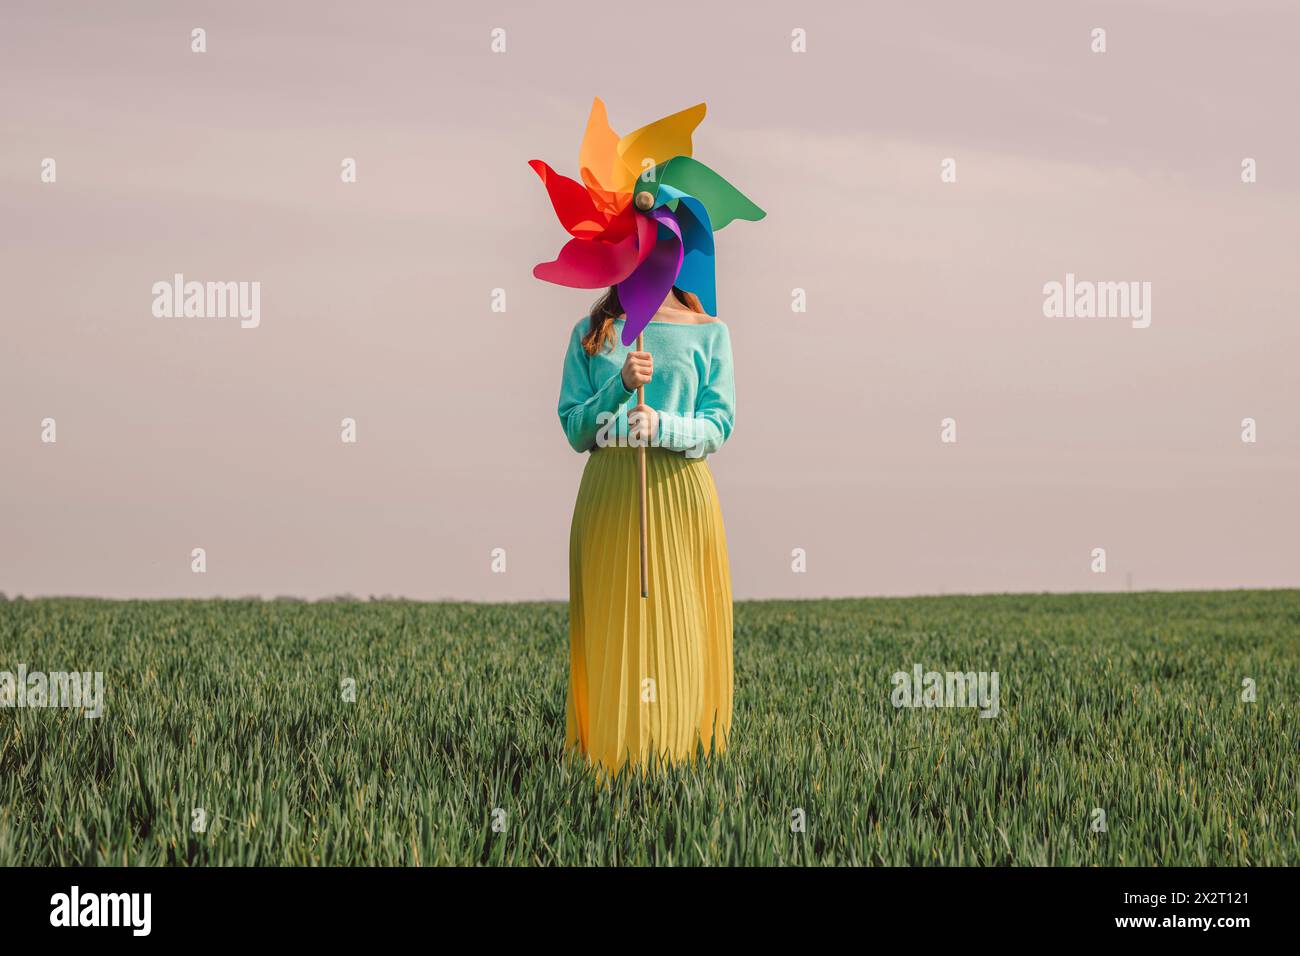 Junge Frau, die ein mehrfarbiges Nadelrad-Spielzeug hält und im grünen Weizenfeld unter dem Himmel steht Stockfoto